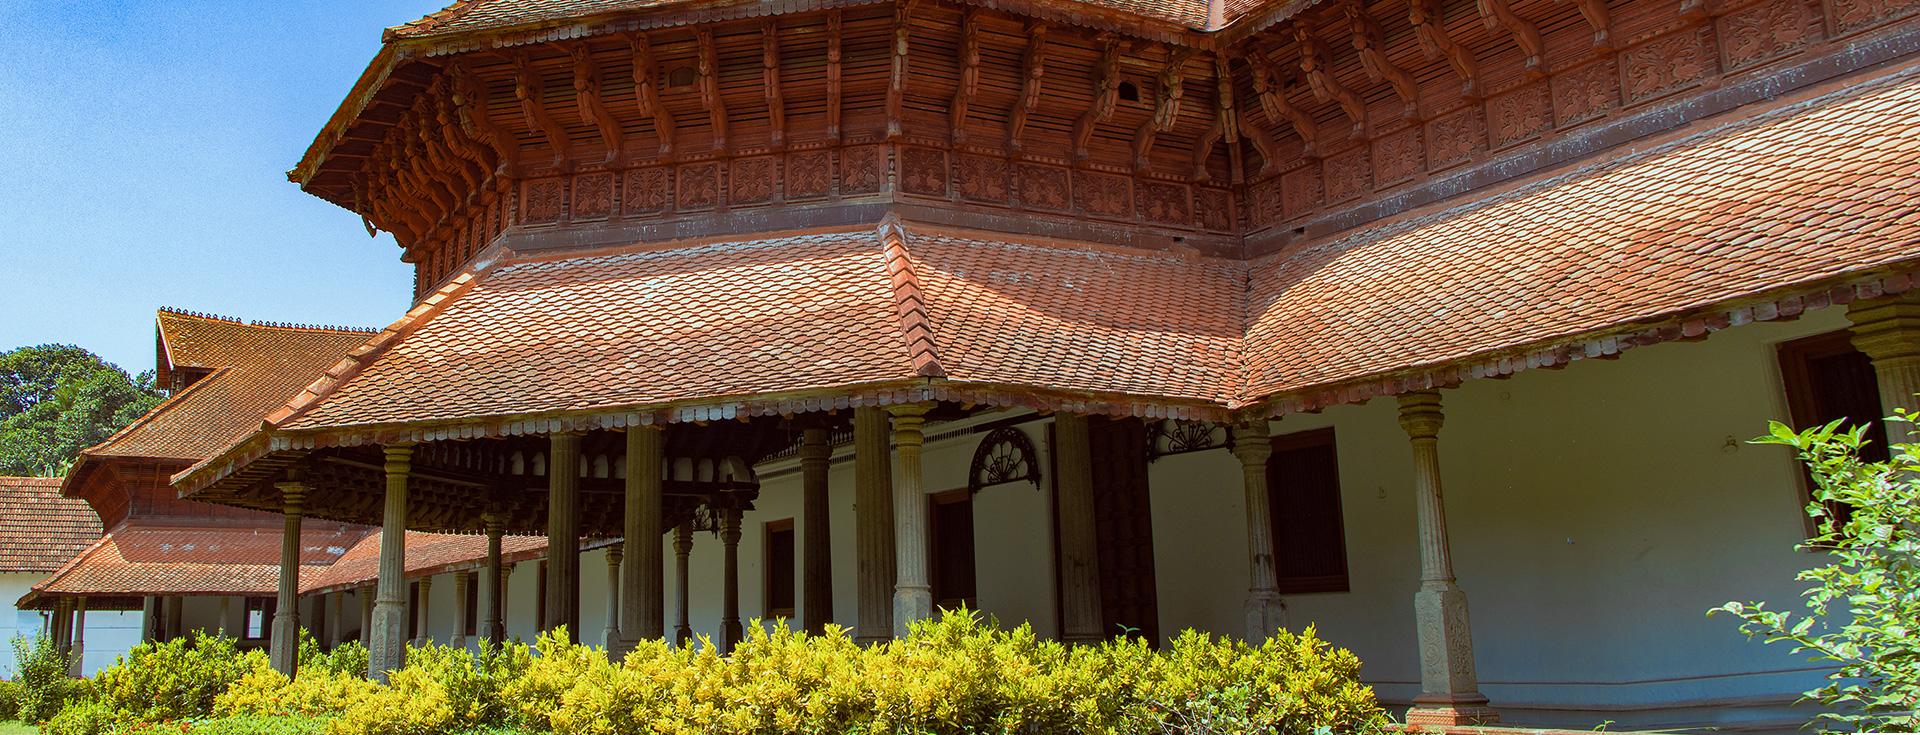 Kuthiramalika Palace